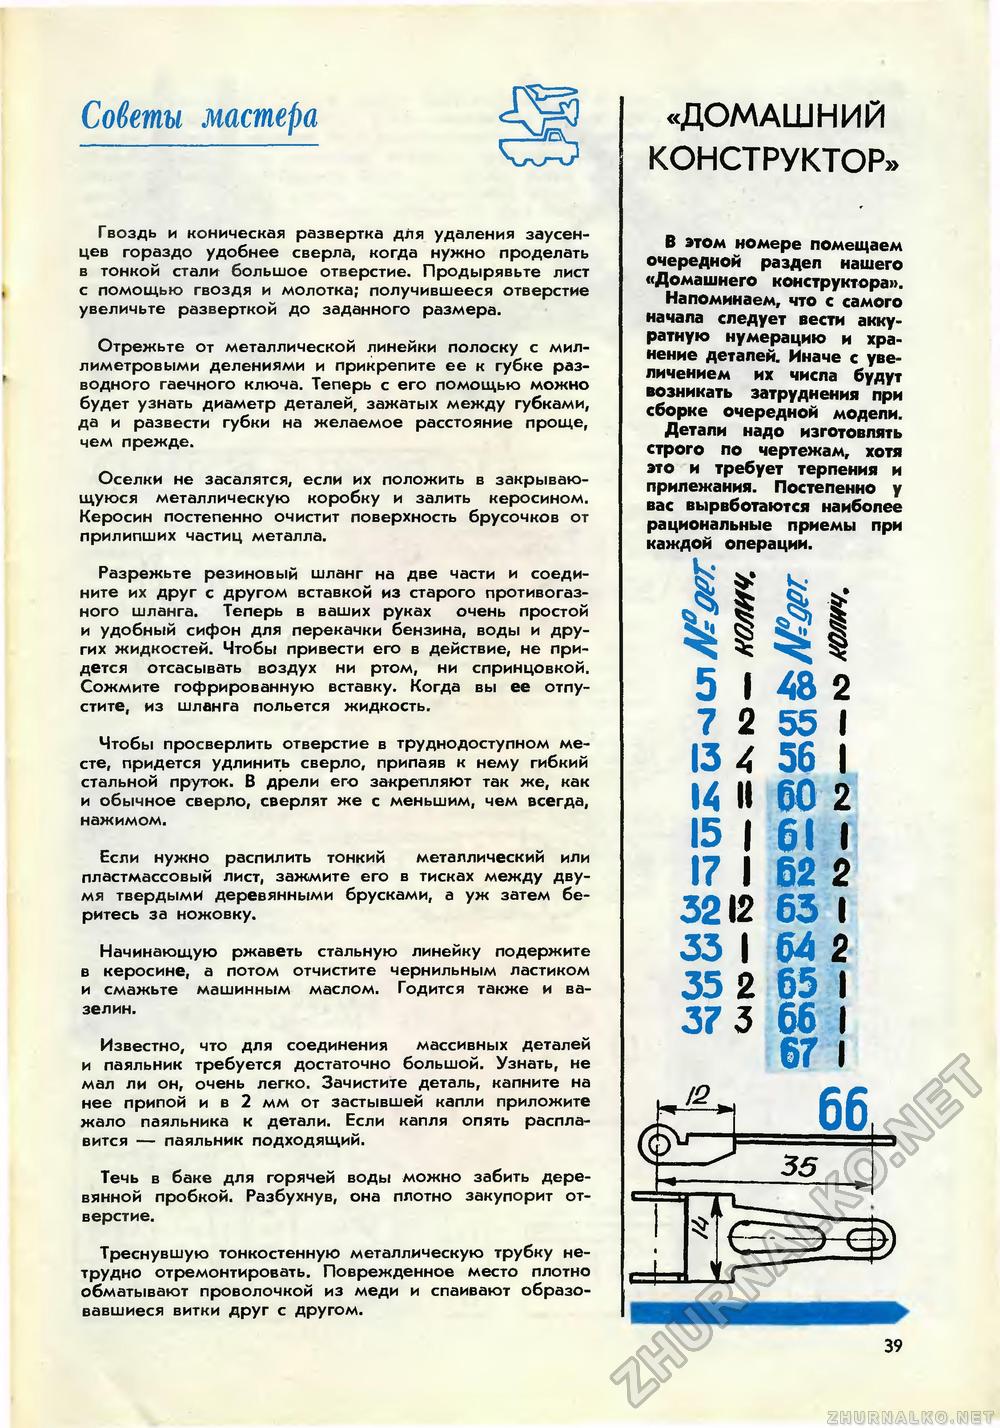   1969-11,  41